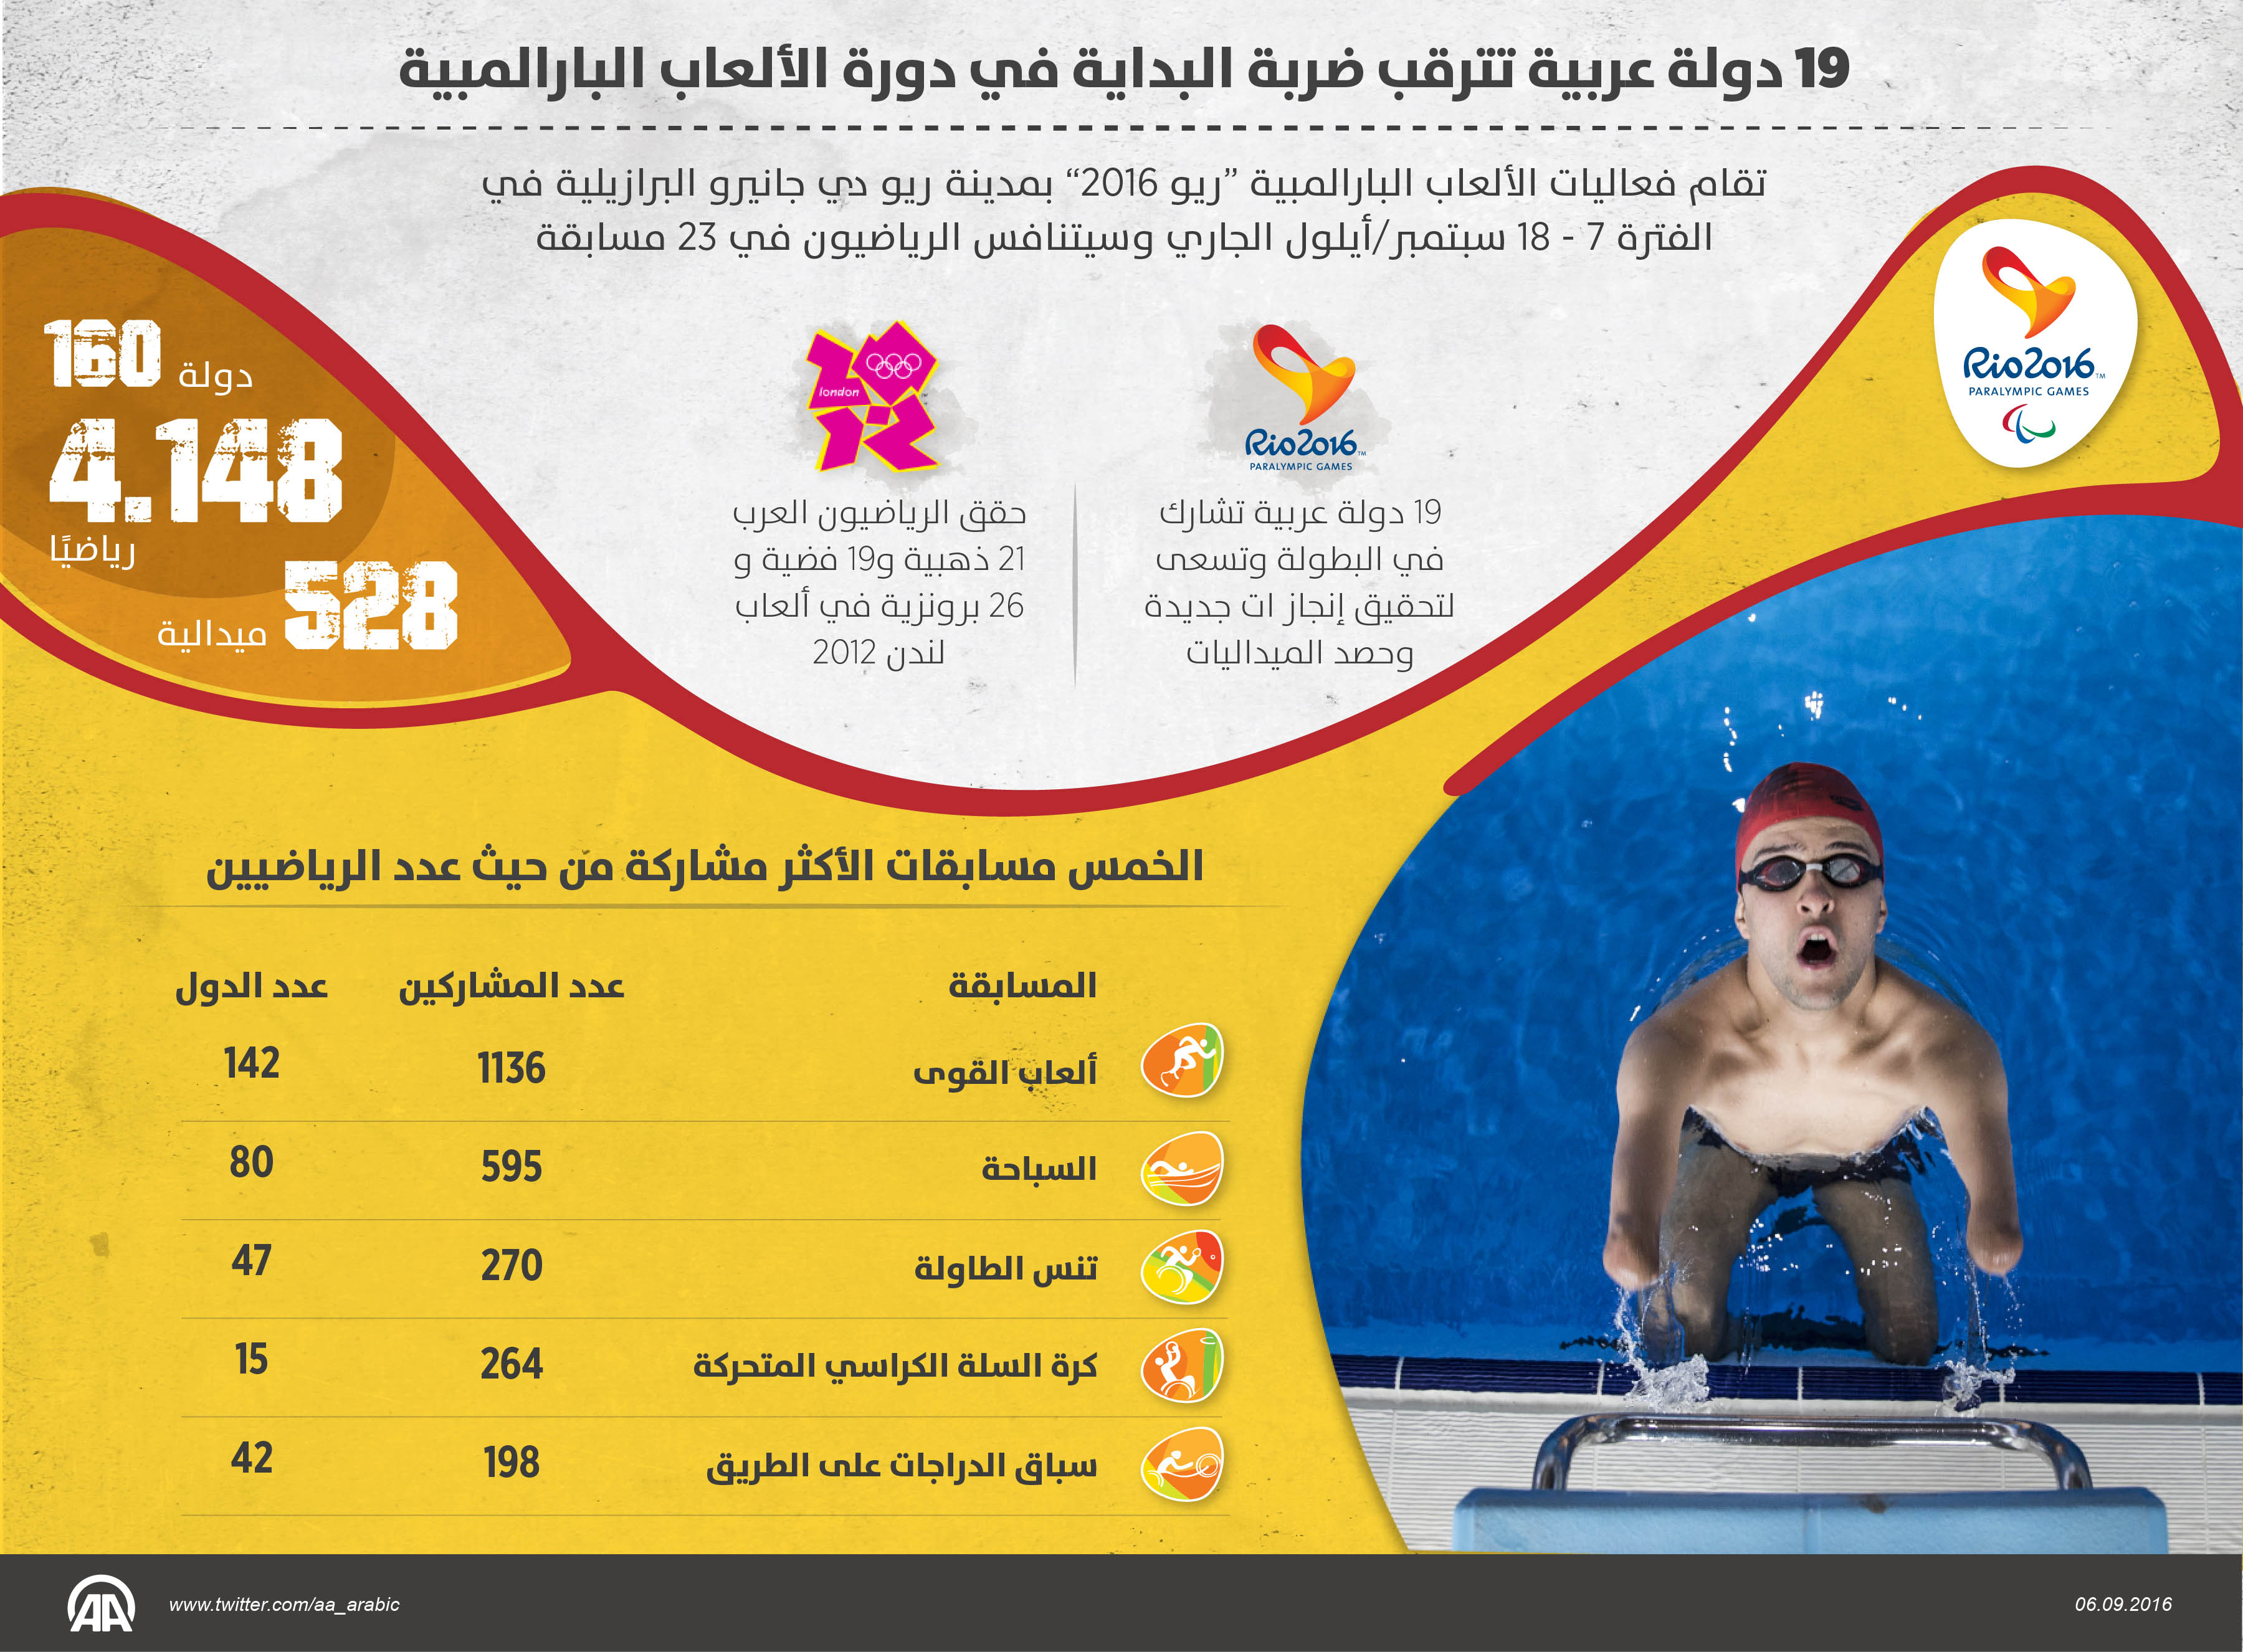  19 دولة عربية تترقب ضربة البداية في دورة الألعاب البارالمبية 